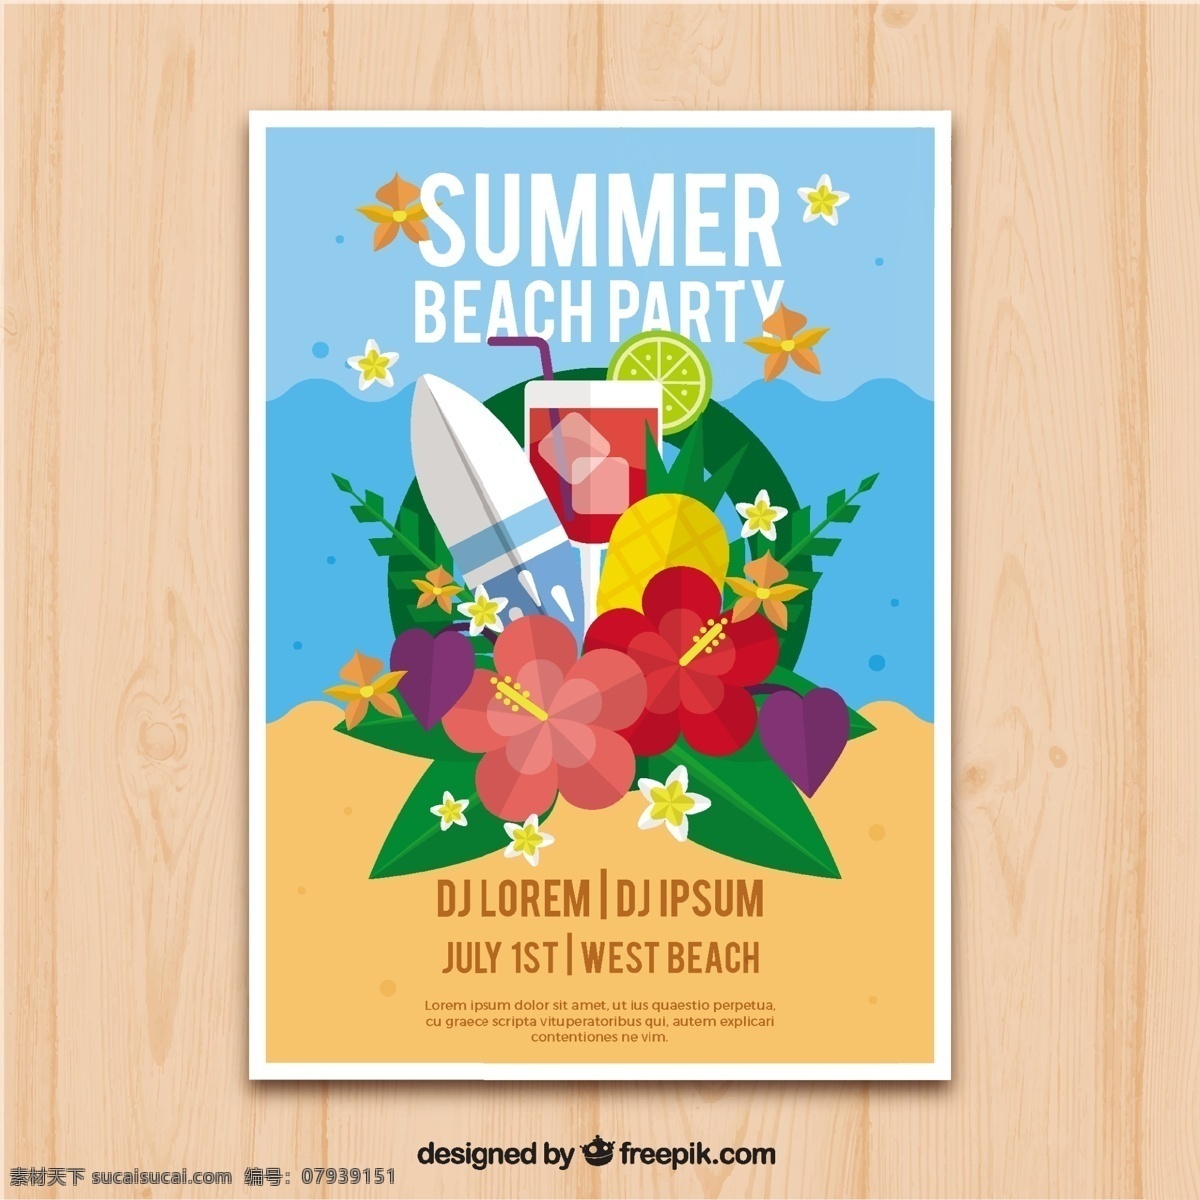 冲浪板 元素 夏日 派对 小册子 花卉 传单 海报 音乐 夏季 模板 性质 宣传册模板 党的海报 舞蹈 树叶 庆祝活动 活动 节日